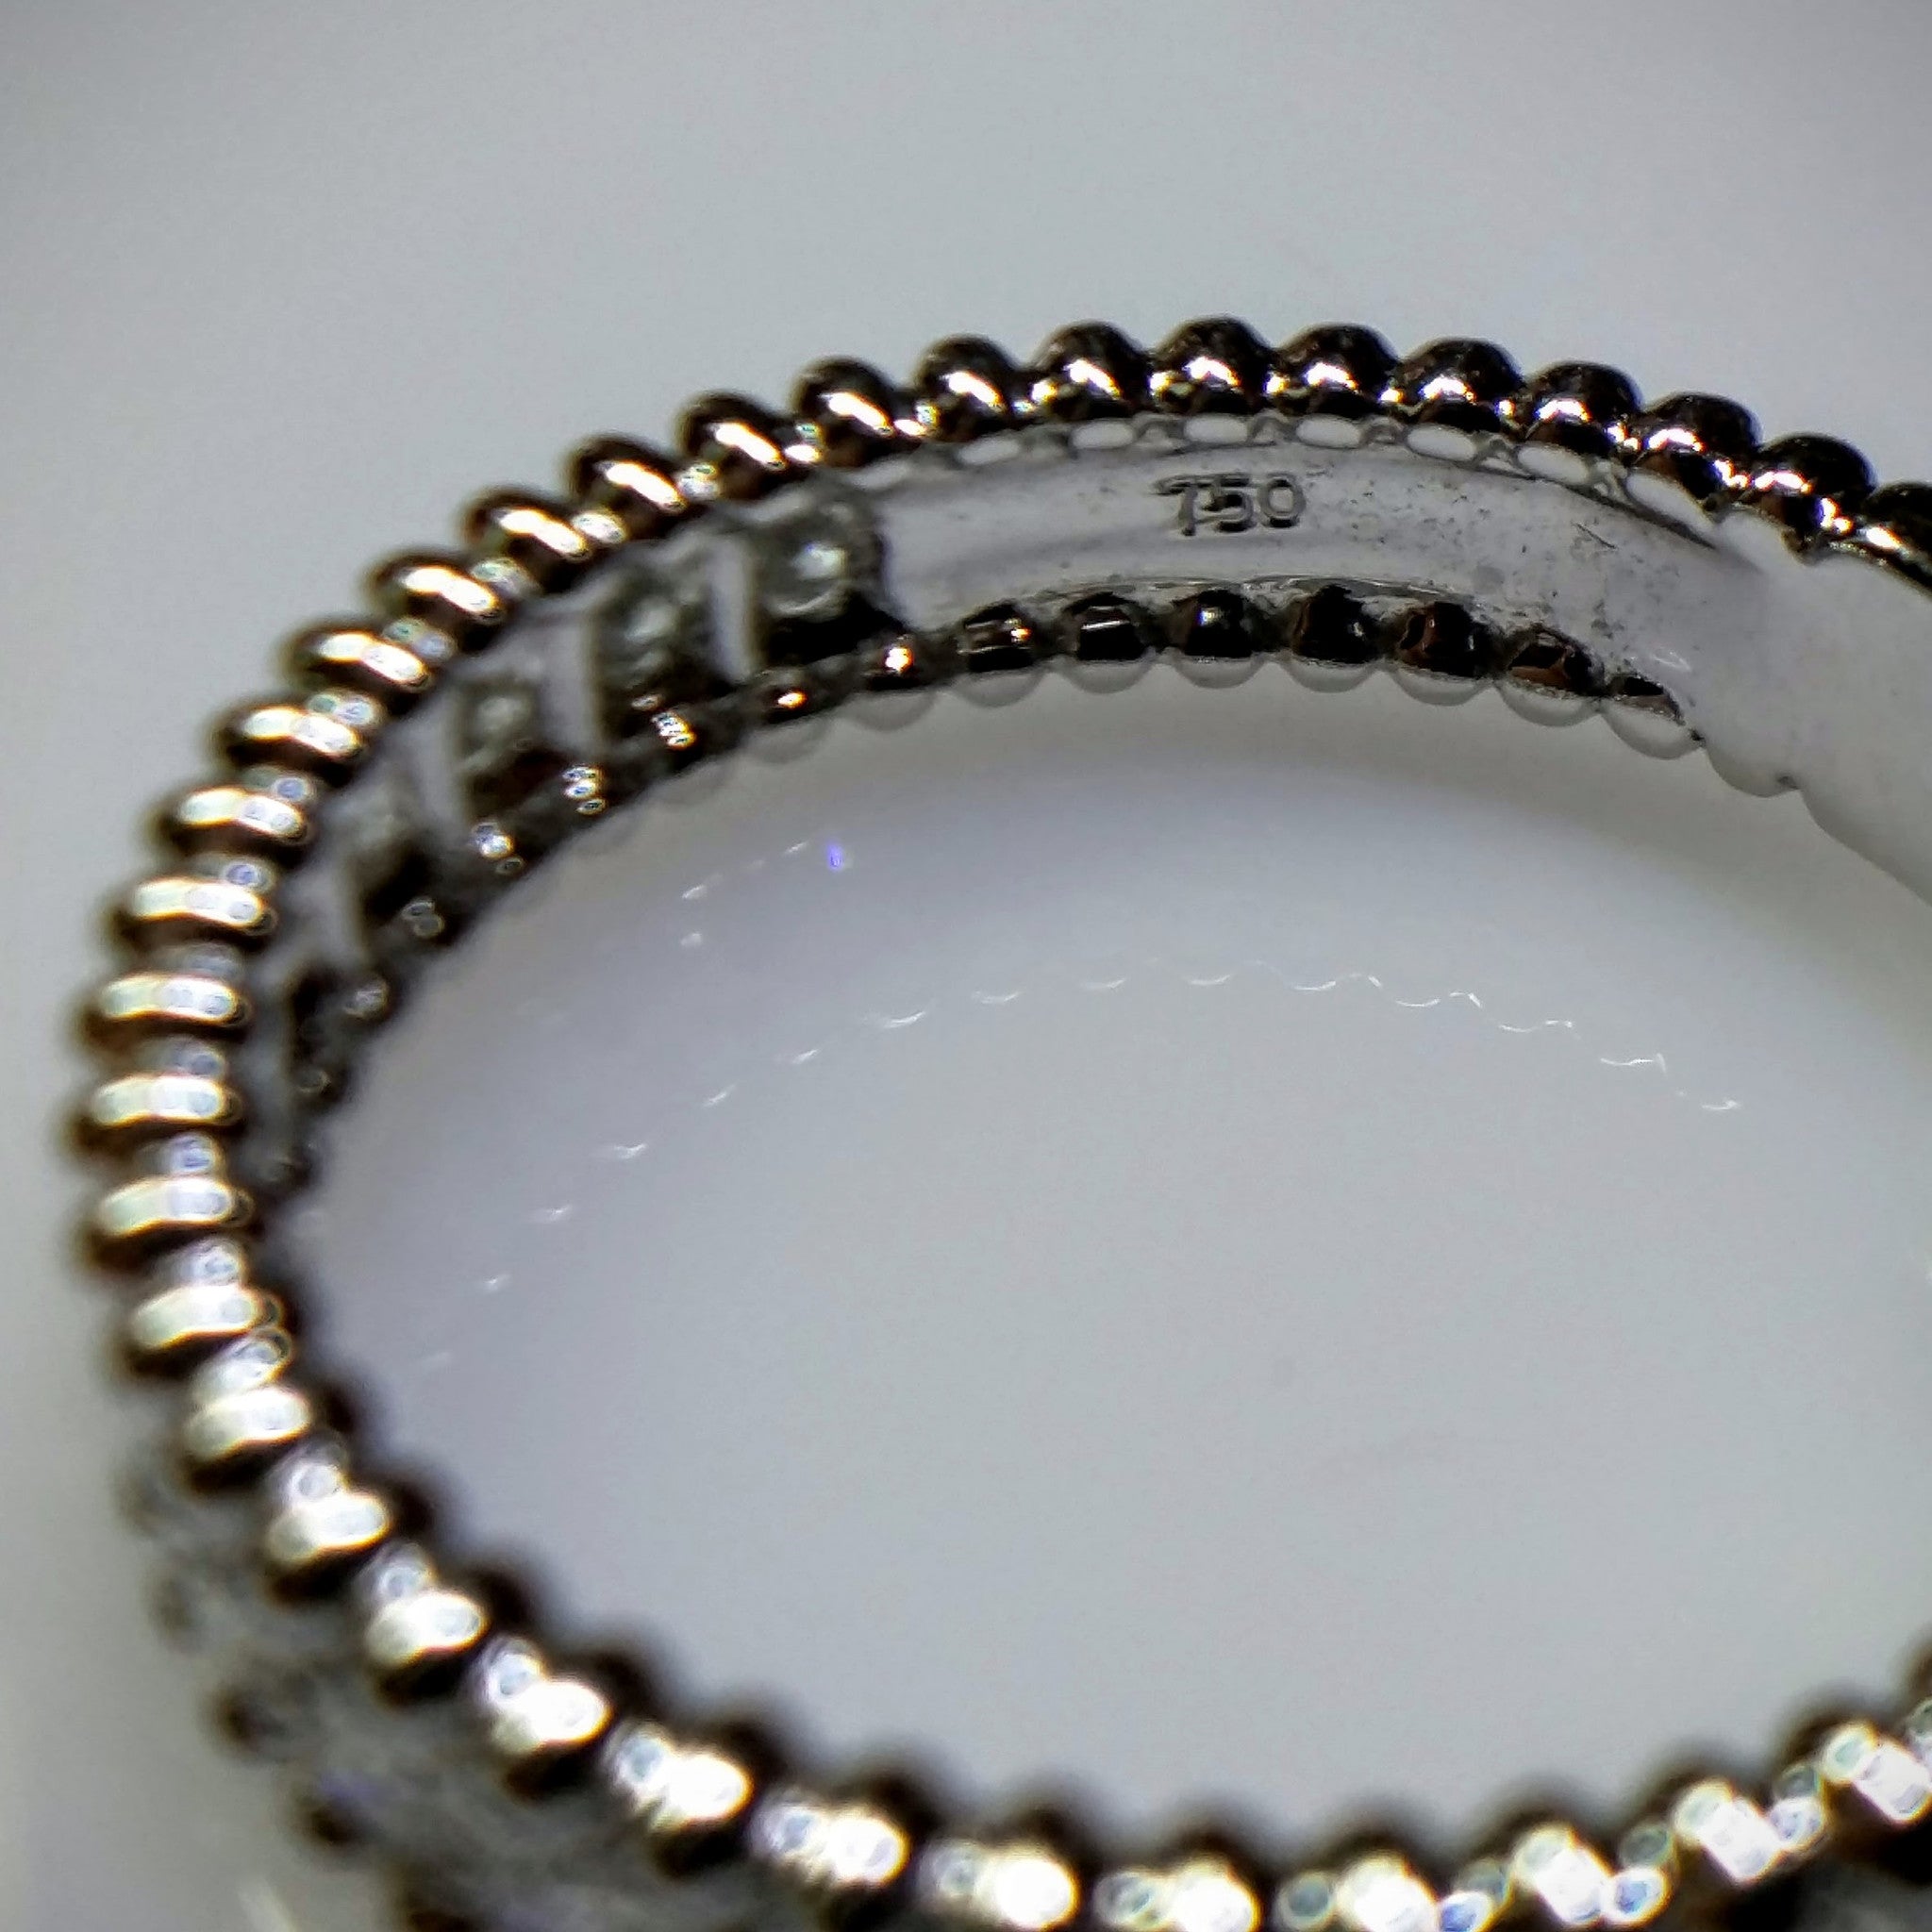 White Gold Diamond "Beaded" Ring by Kupfer Design